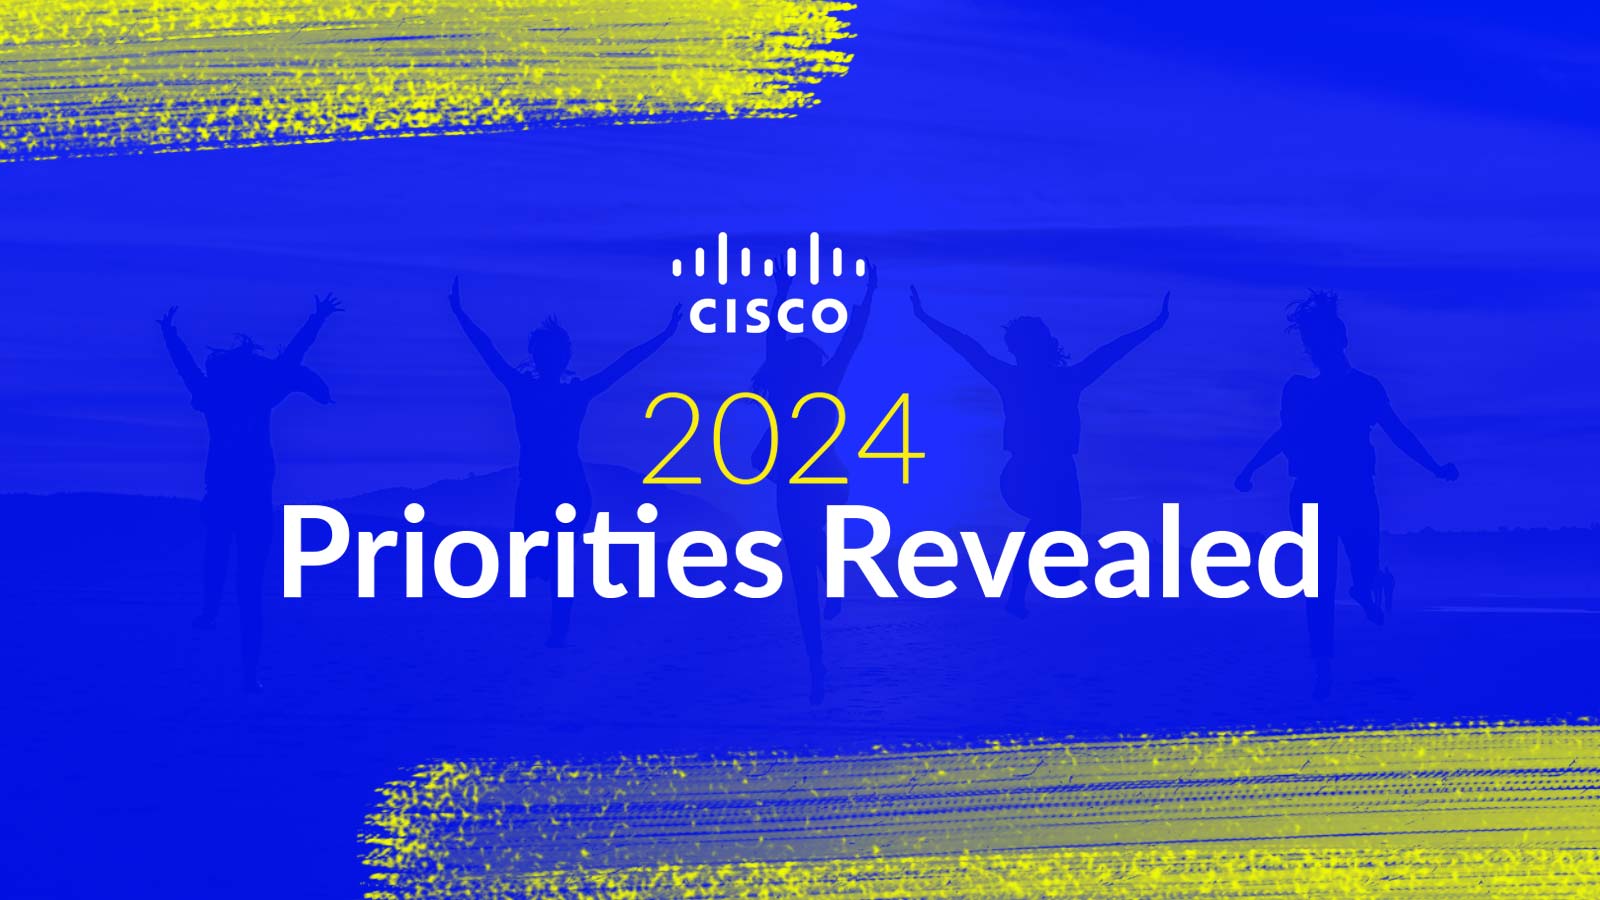 Redefining Success Cisco's 2024 Priorities Revealed